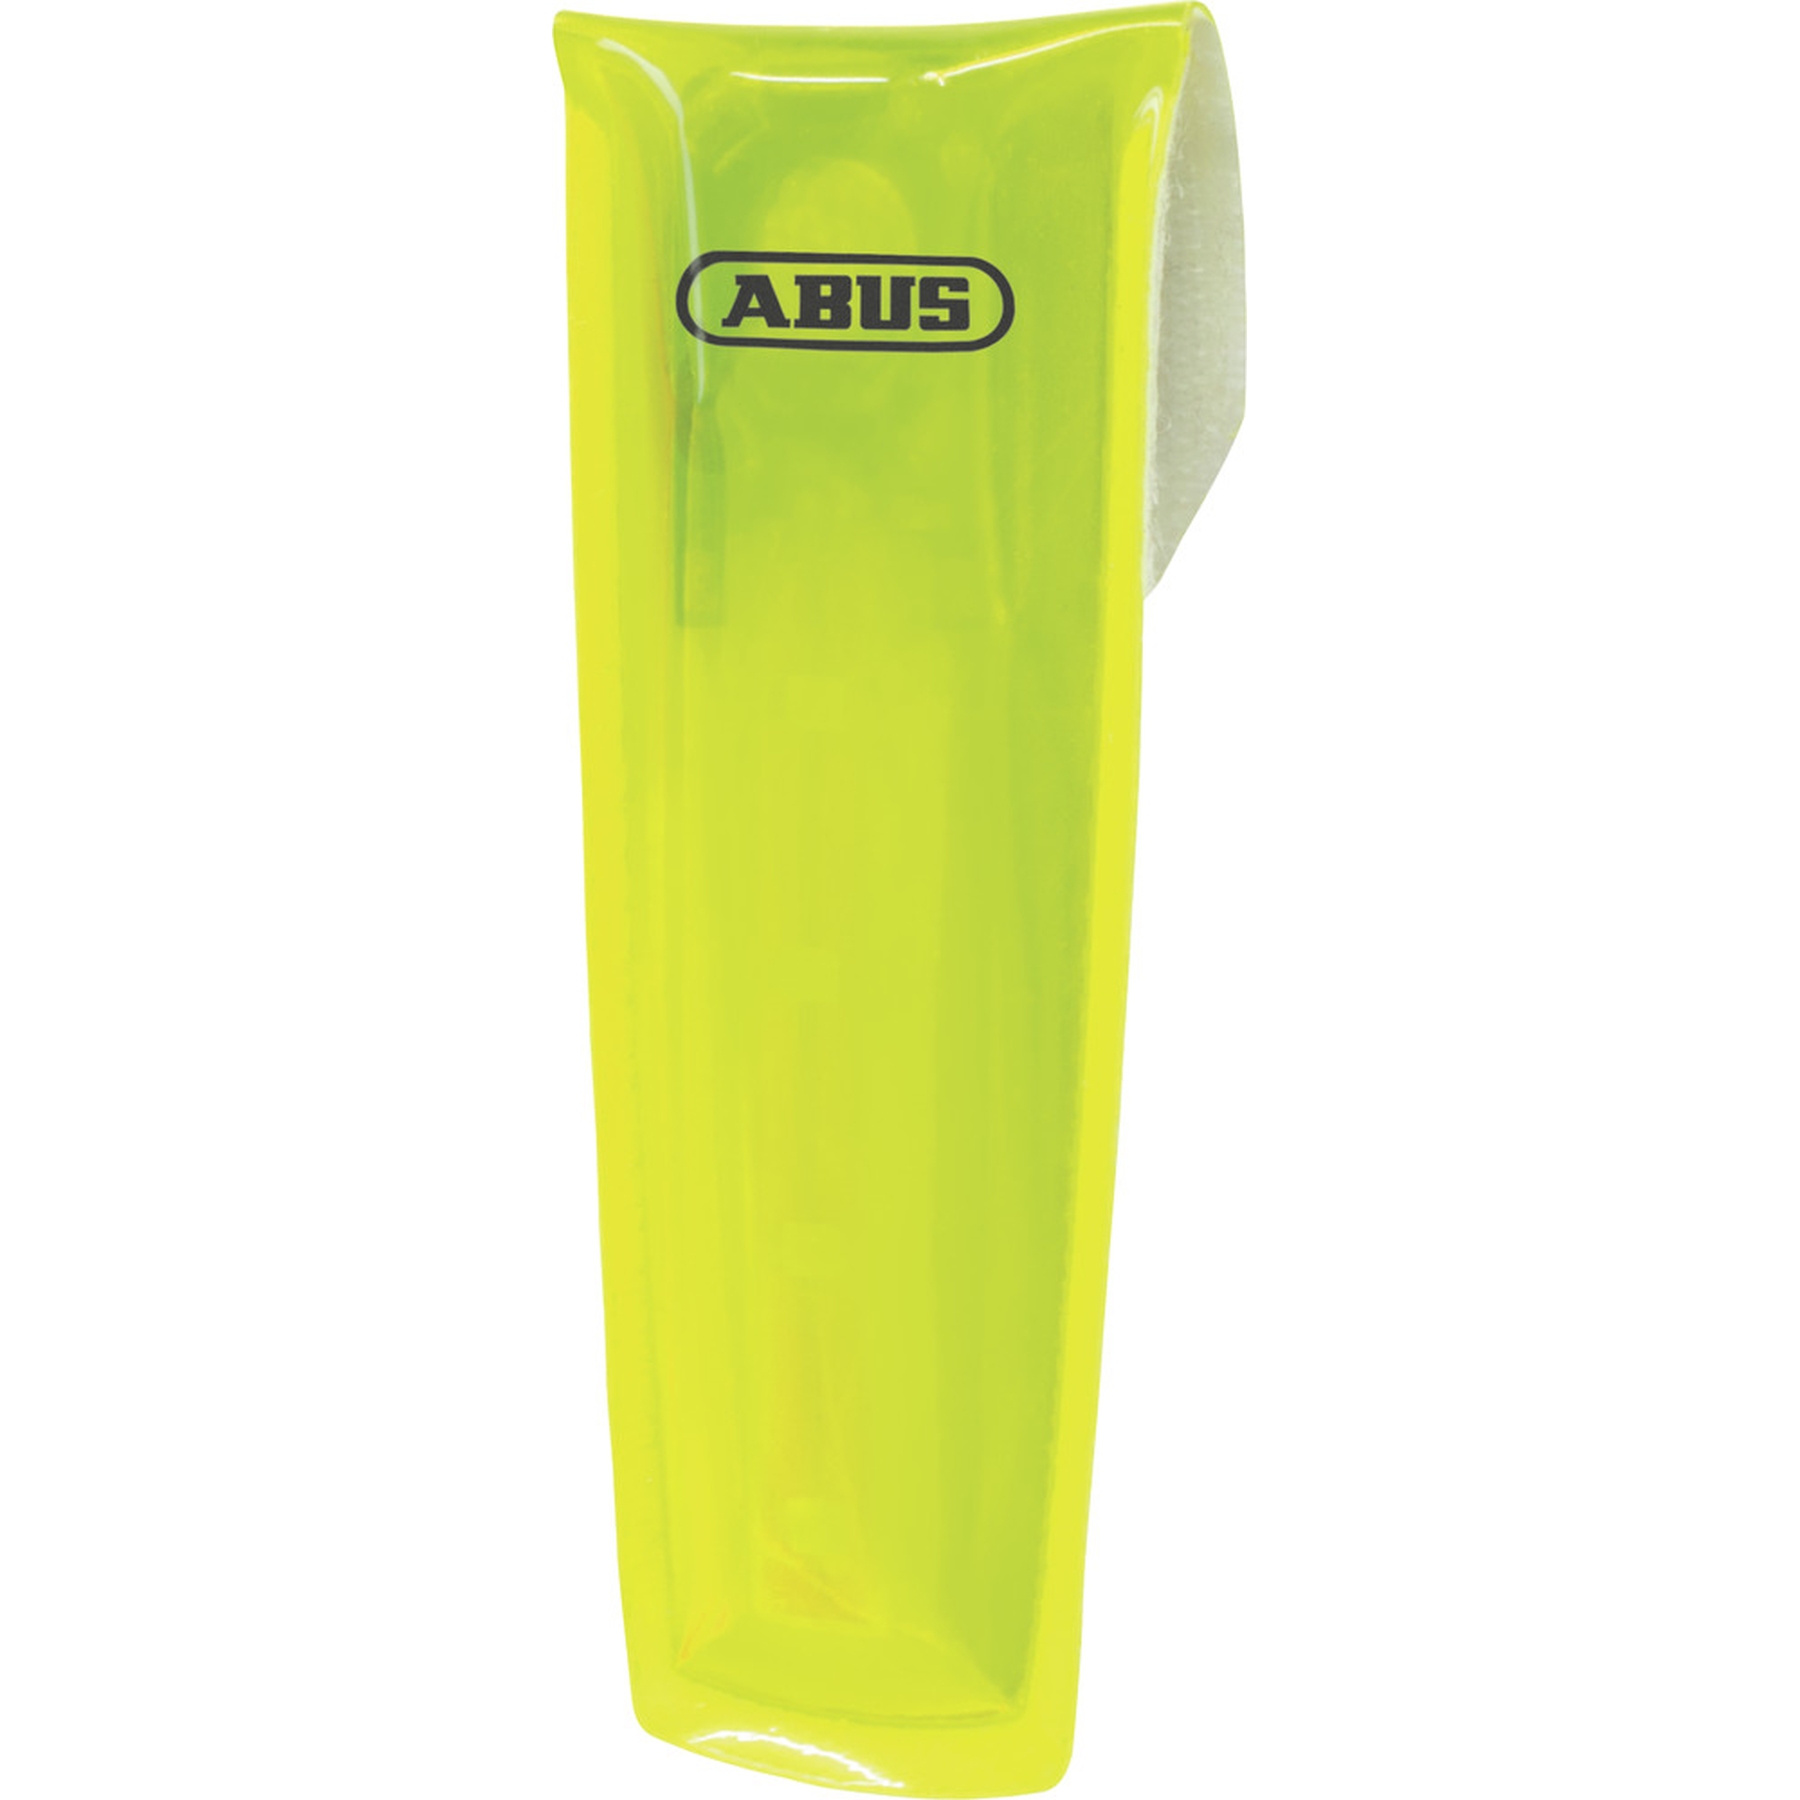 Immagine prodotto da ABUS Lumino Indicator Light Luce - yellow